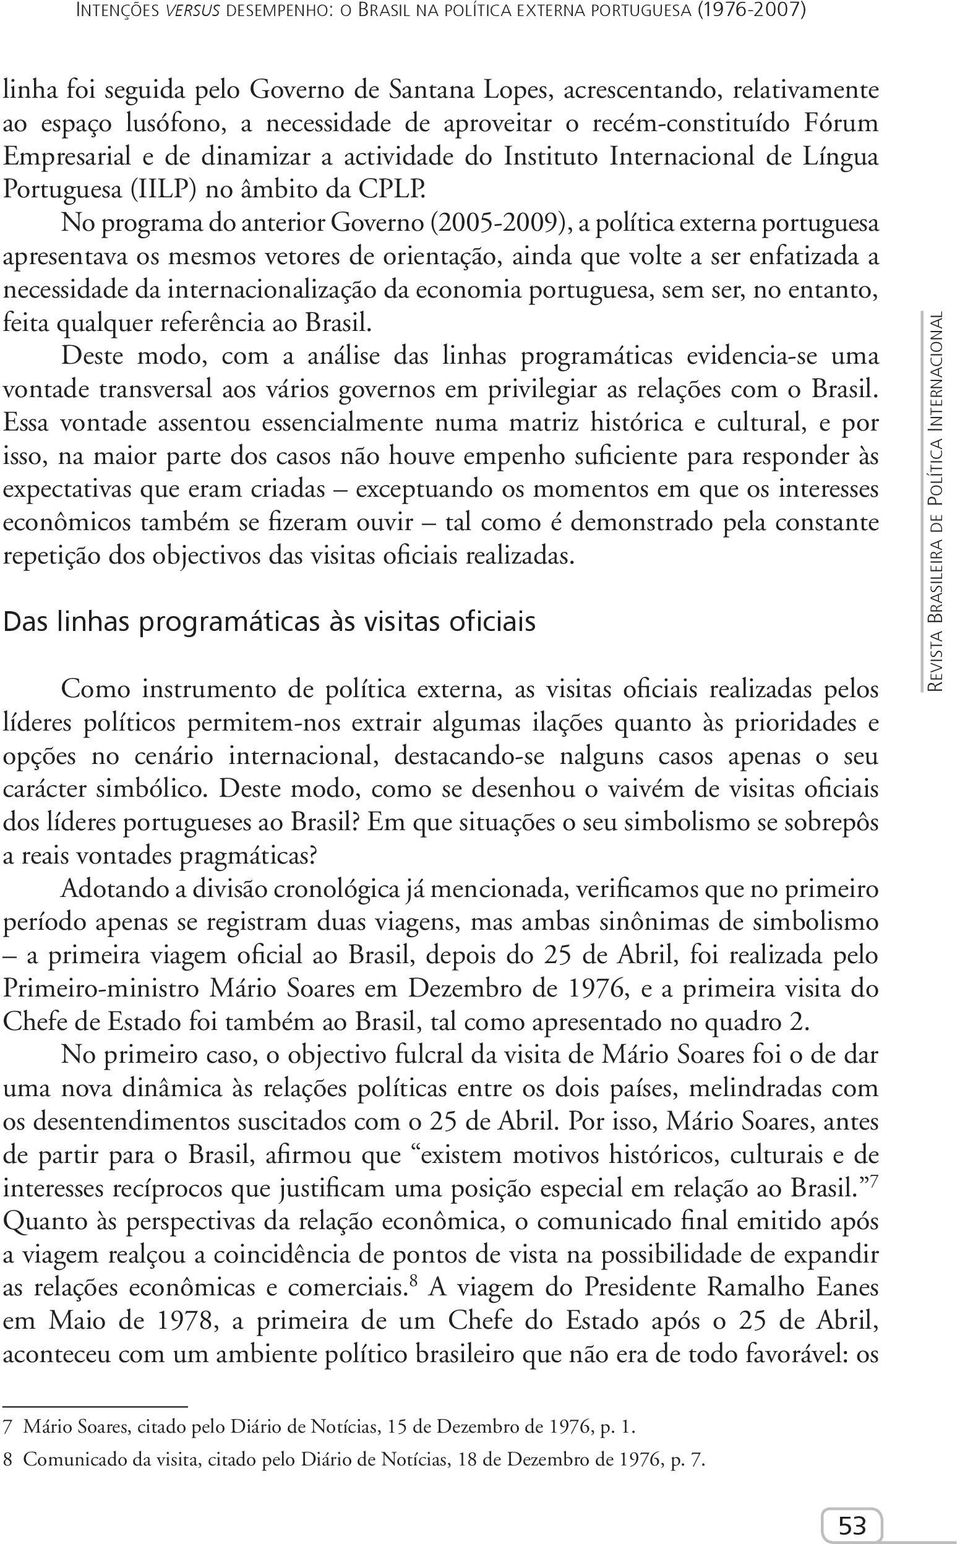 No programa do anterior Governo (2005-2009), a política externa portuguesa apresentava os mesmos vetores de orientação, ainda que volte a ser enfatizada a necessidade da internacionalização da